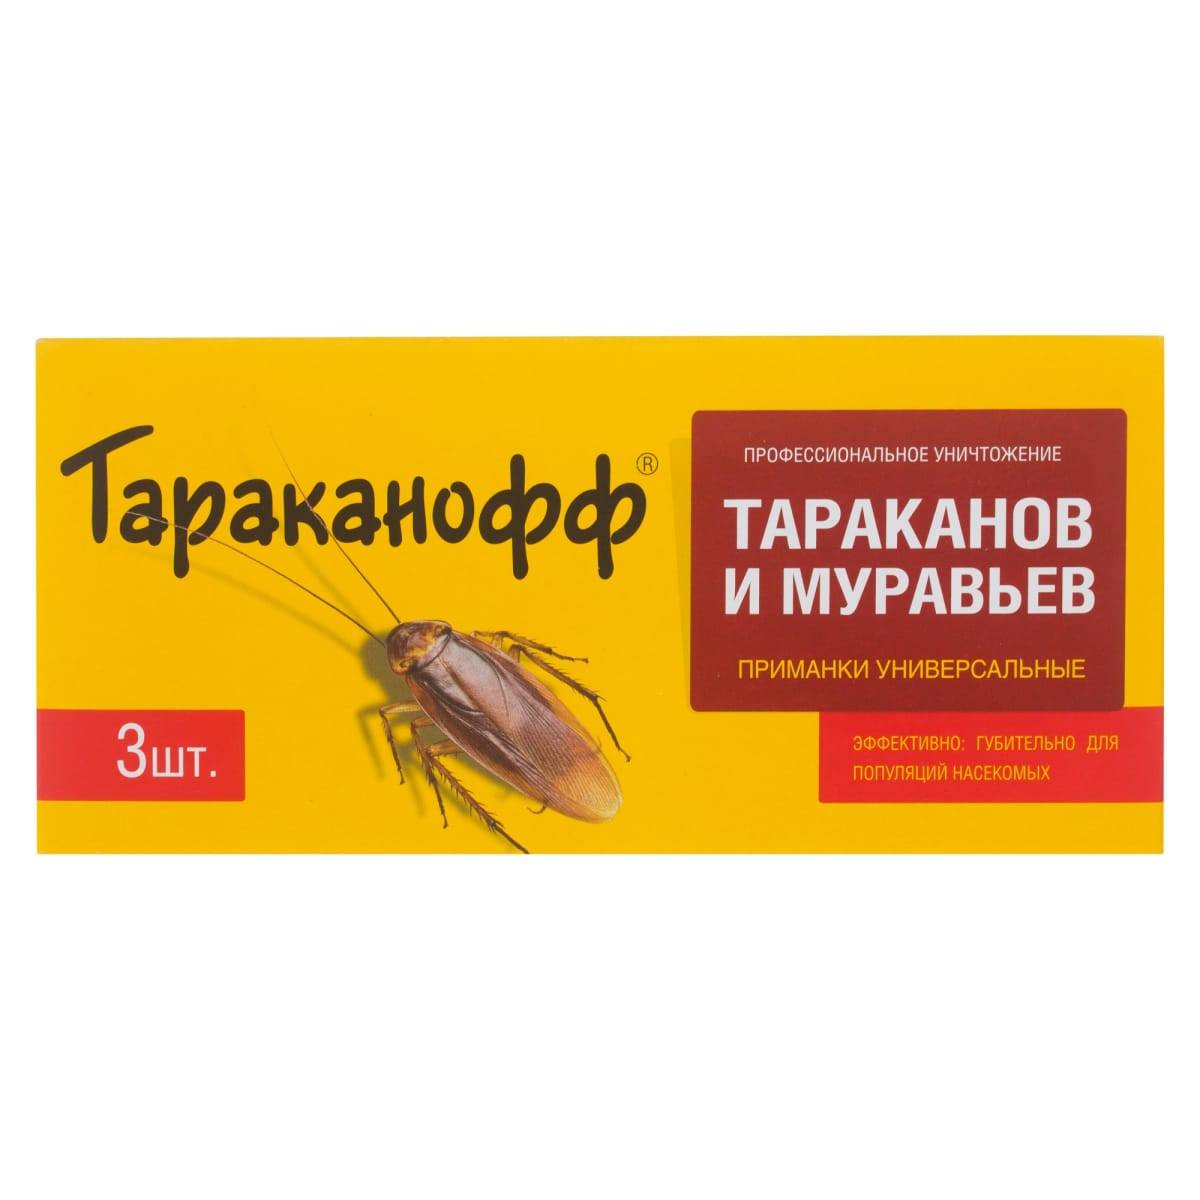 Дуст от тараканов: инструкция по применению, список средств